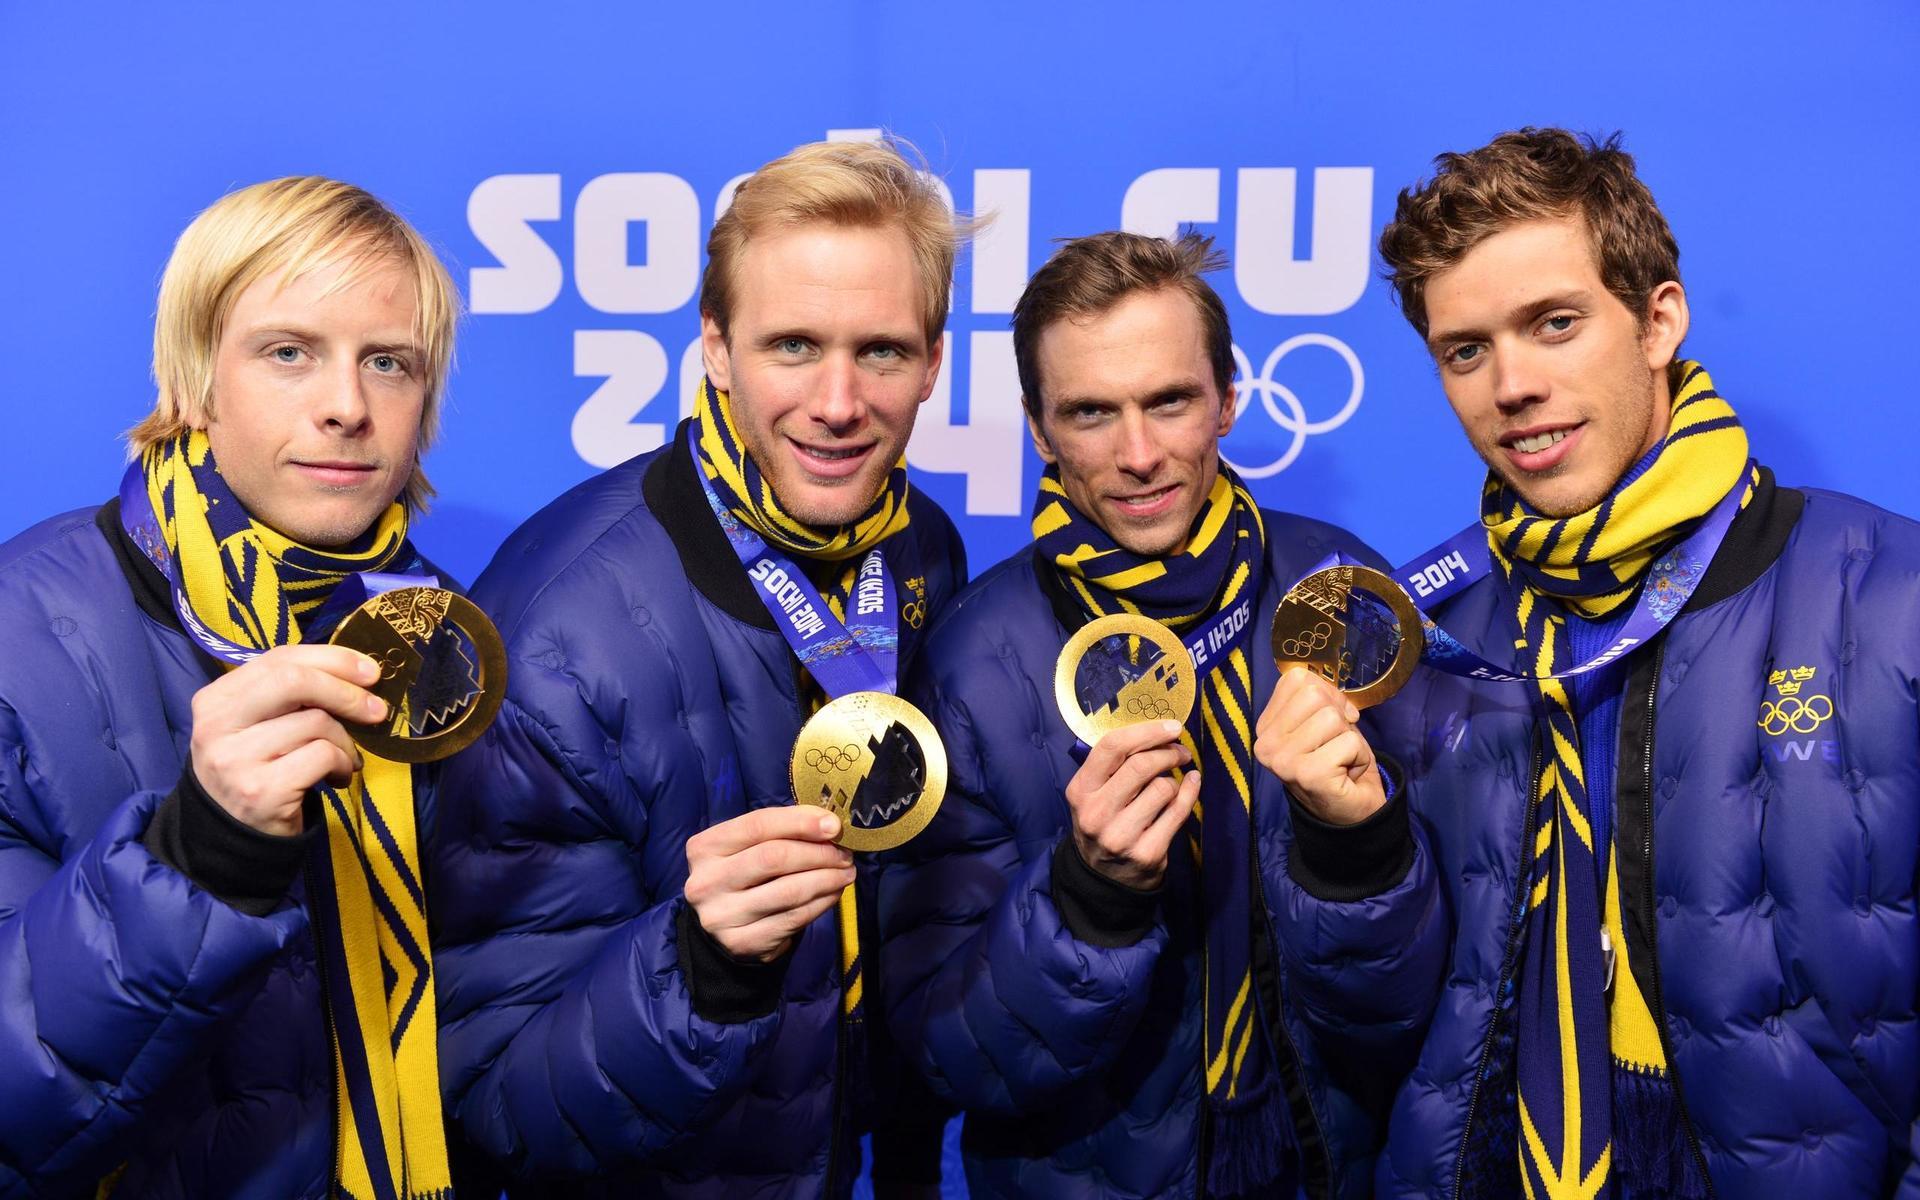 Sveriges Lars Nelson, Daniel Richardsson, Johan Olsson och Marcus Hellner med sina guldmedaljer under prisceremonin för herrarnas stafett över 4x10 km under OS i Sochi 2014.